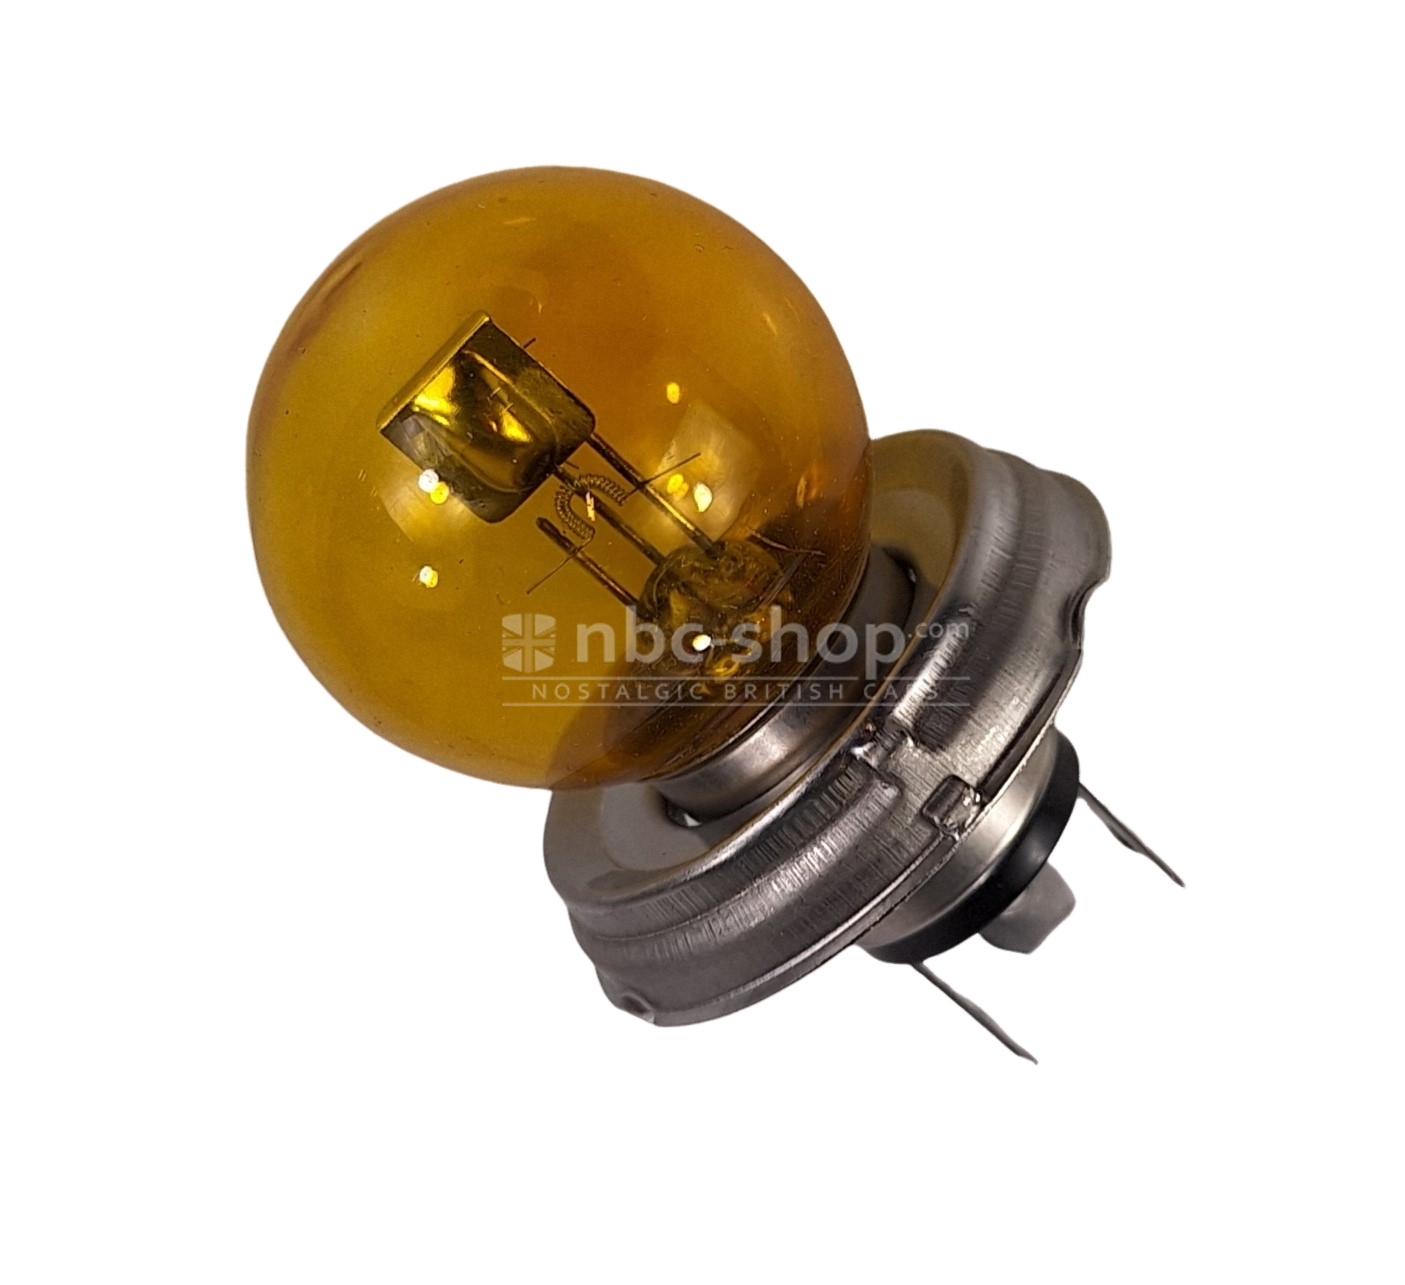 Ampoule de phare code européen jaune - 12V 45/40W